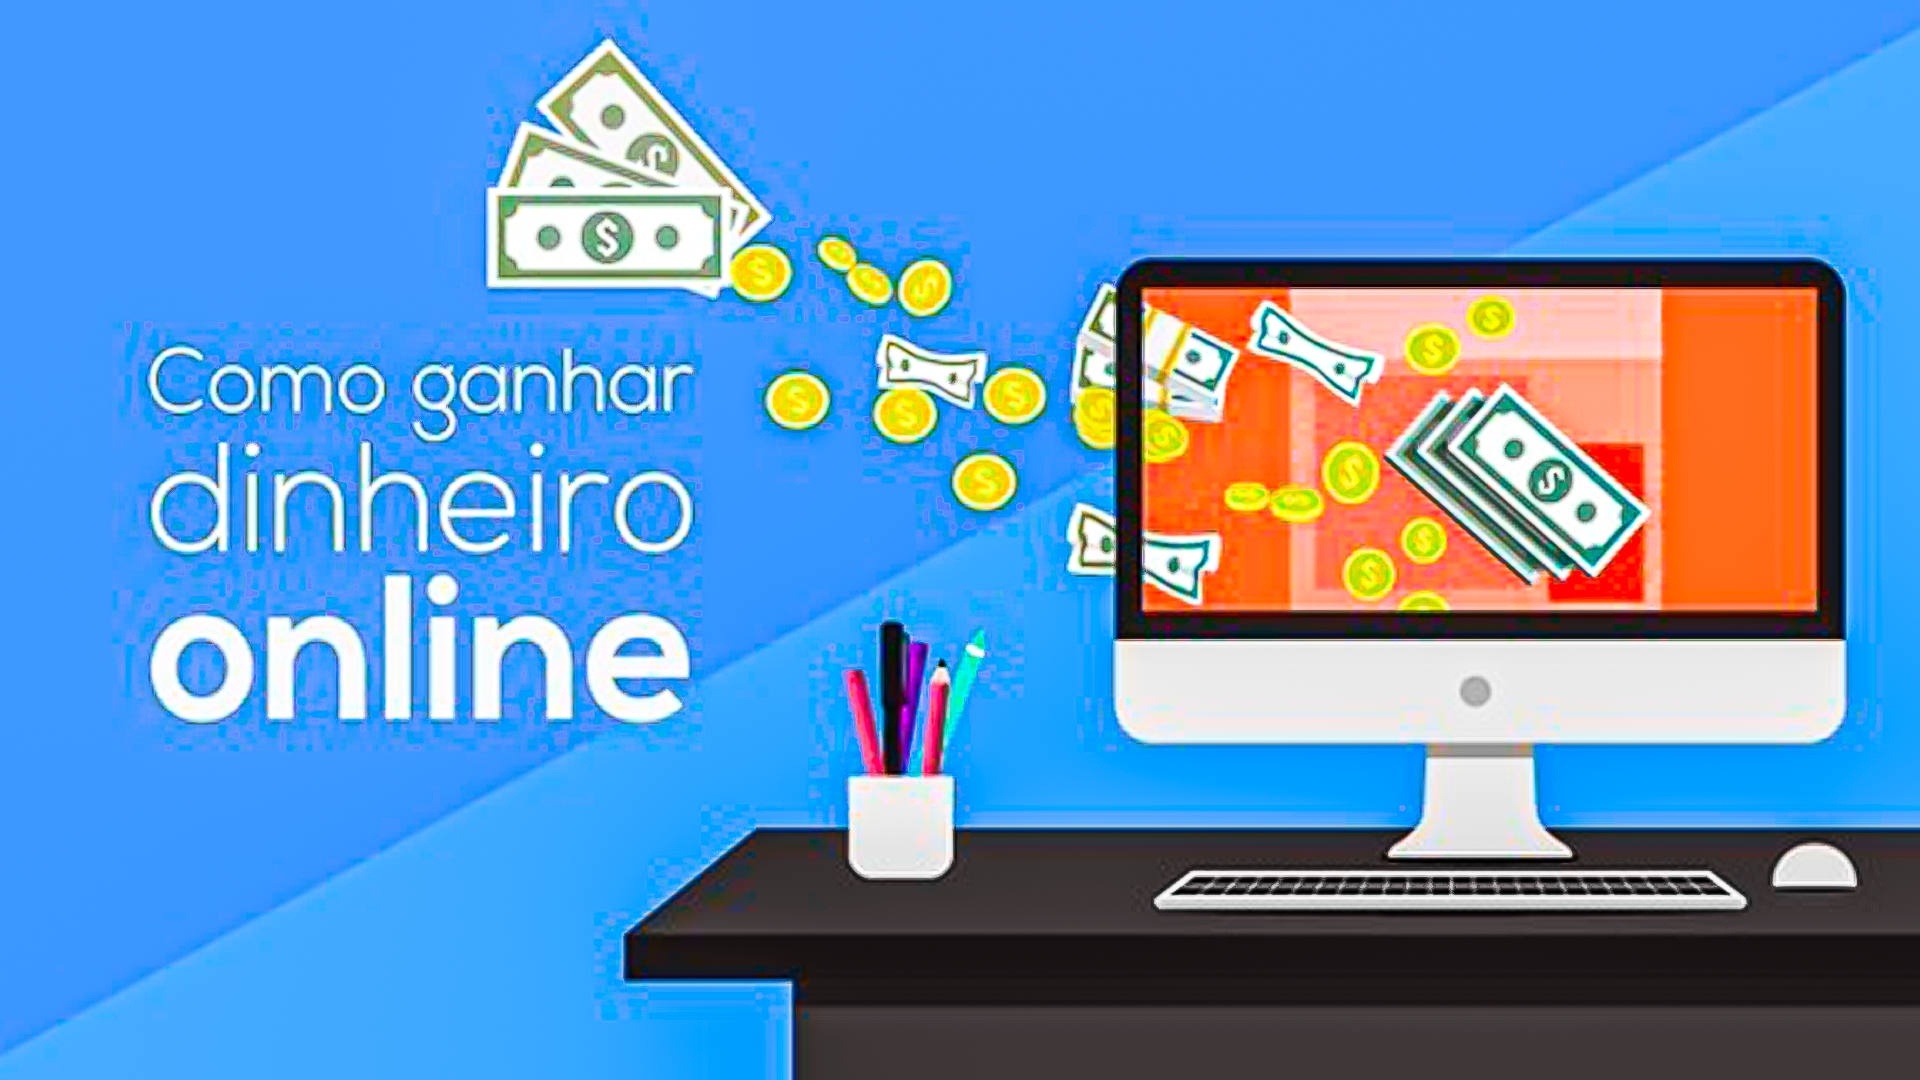 GANHE DINHEIRO LENDO E-MAILS  Ganhar dinheiro facil, Dinheiro na internet,  Ganhar dinheiro na internet